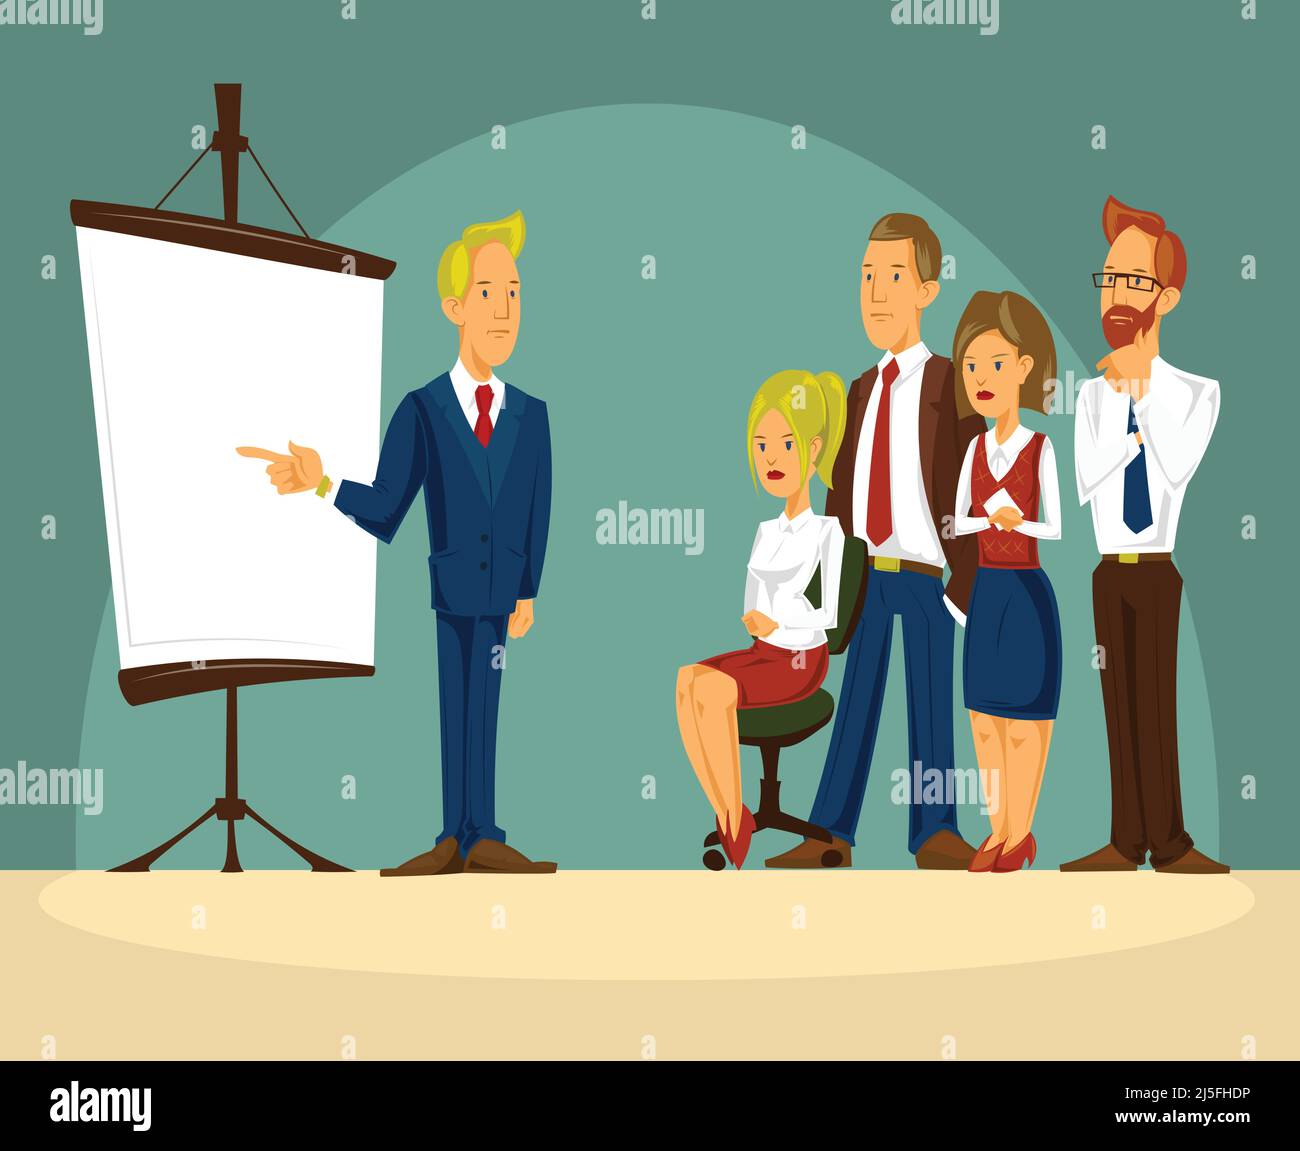 Vektor-Cartoon-Illustration eines intelligenten Geschäftsmann im Büro eine Präsentation, auf dem weißen Plakat stehen und einen Bericht machen. Business man-Angebot Stock Vektor